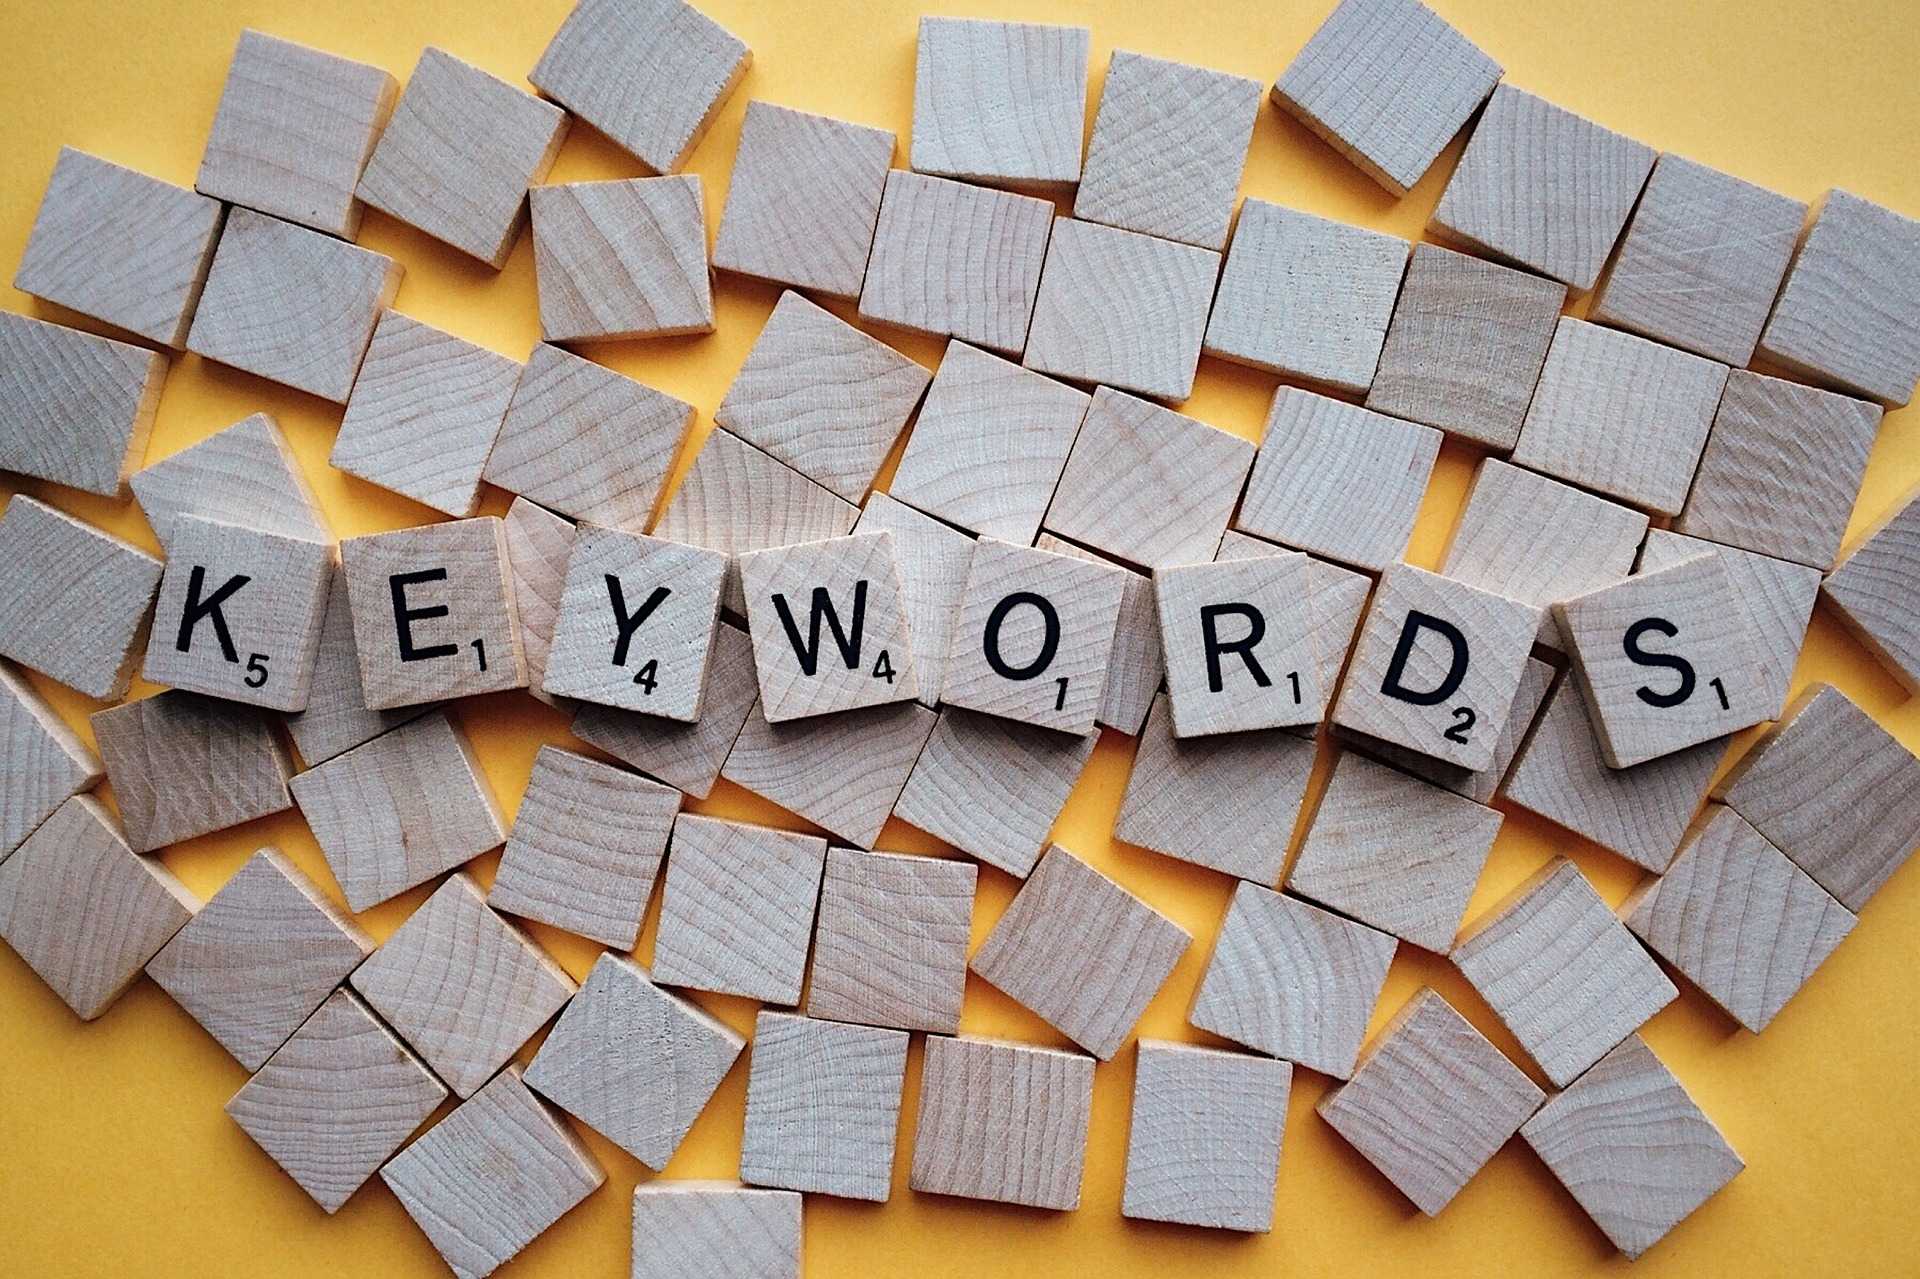 Den engelska termen Keyword betyder ett eller flera ord som användare skriver i sökmotorer för att hitta och konsultera webbplatser av intresse